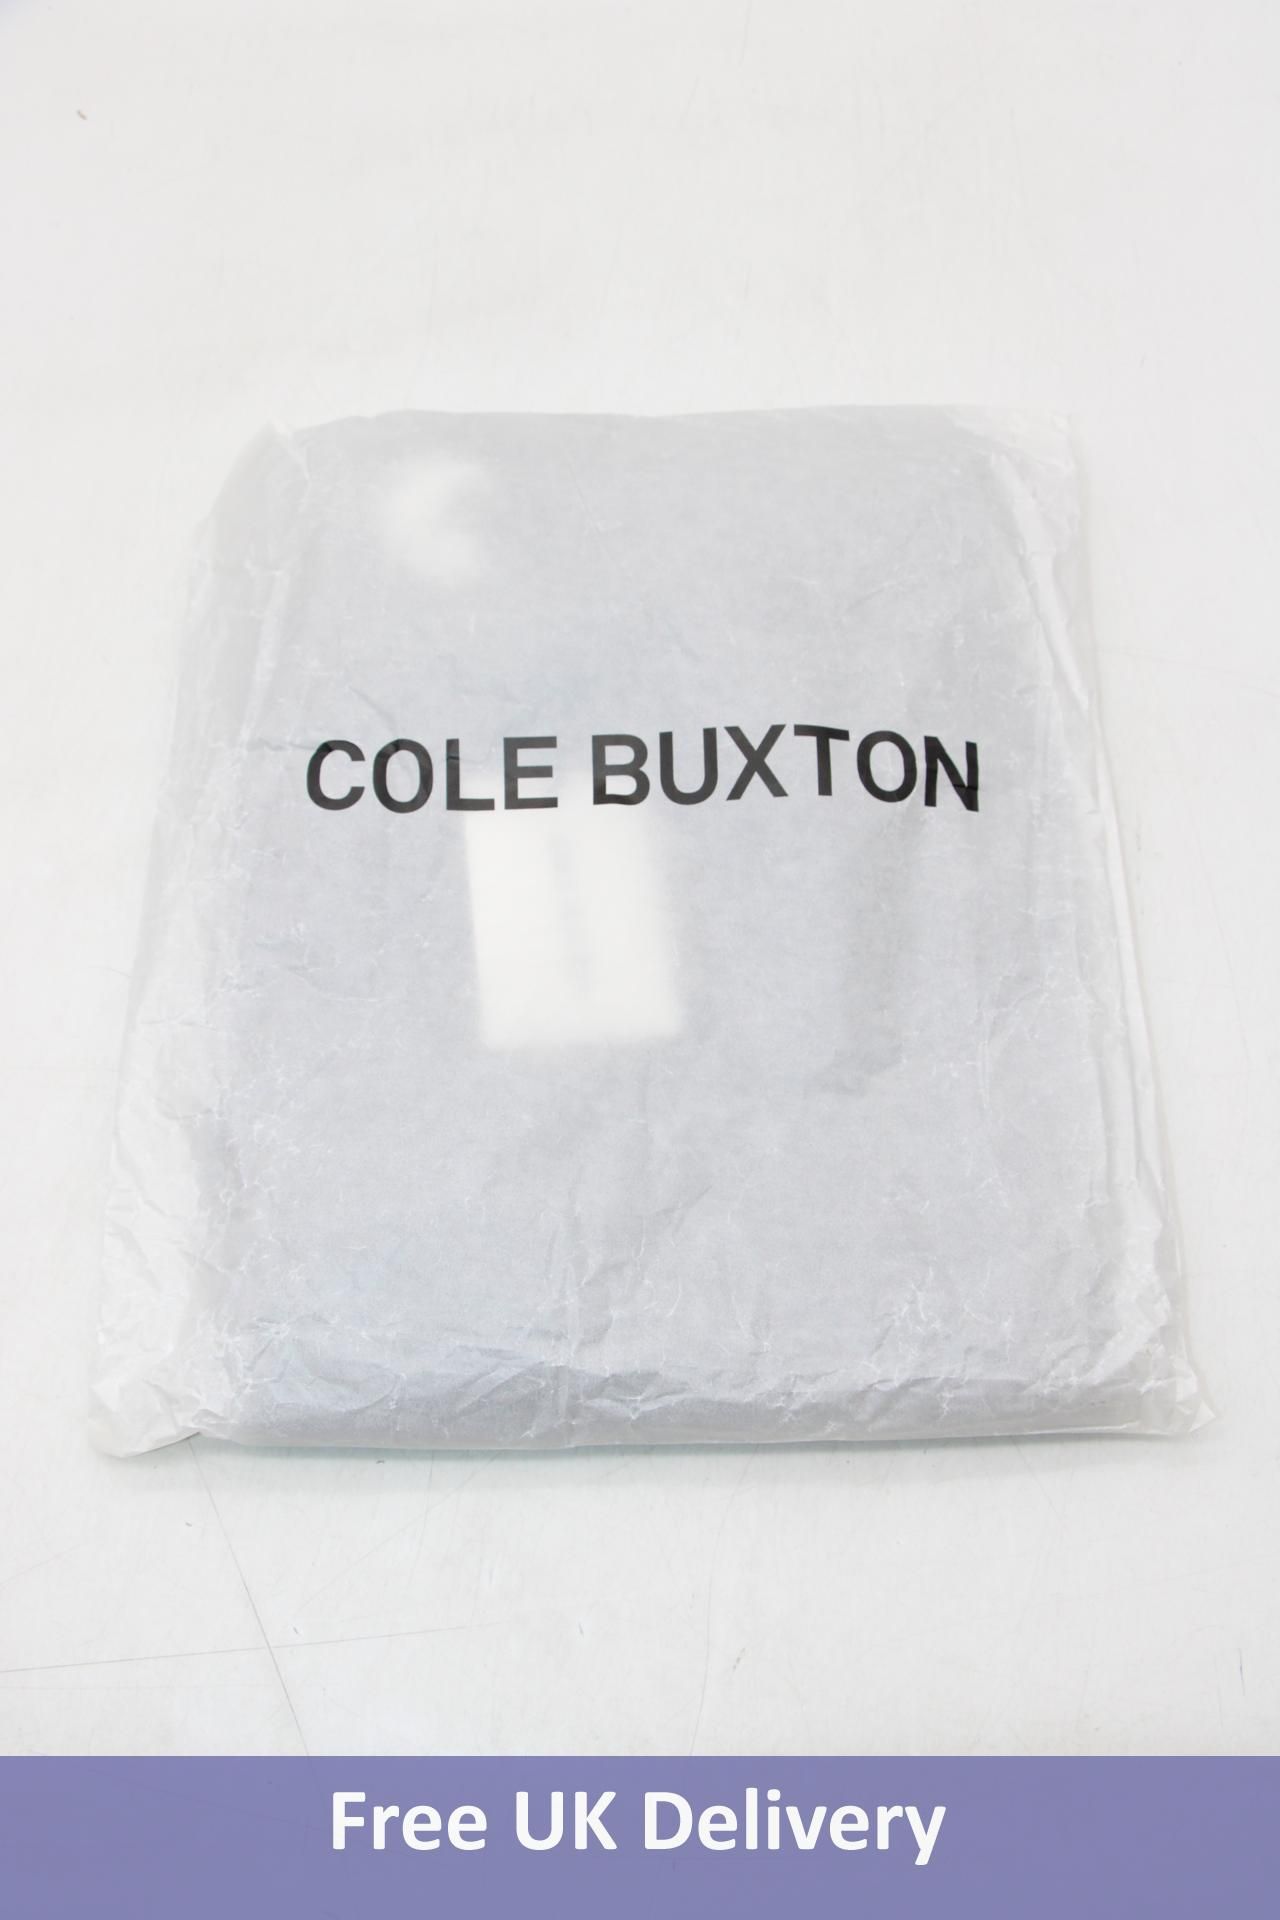 Cole Buxton Lounge Sweatpants, OG Washed Black, Size M